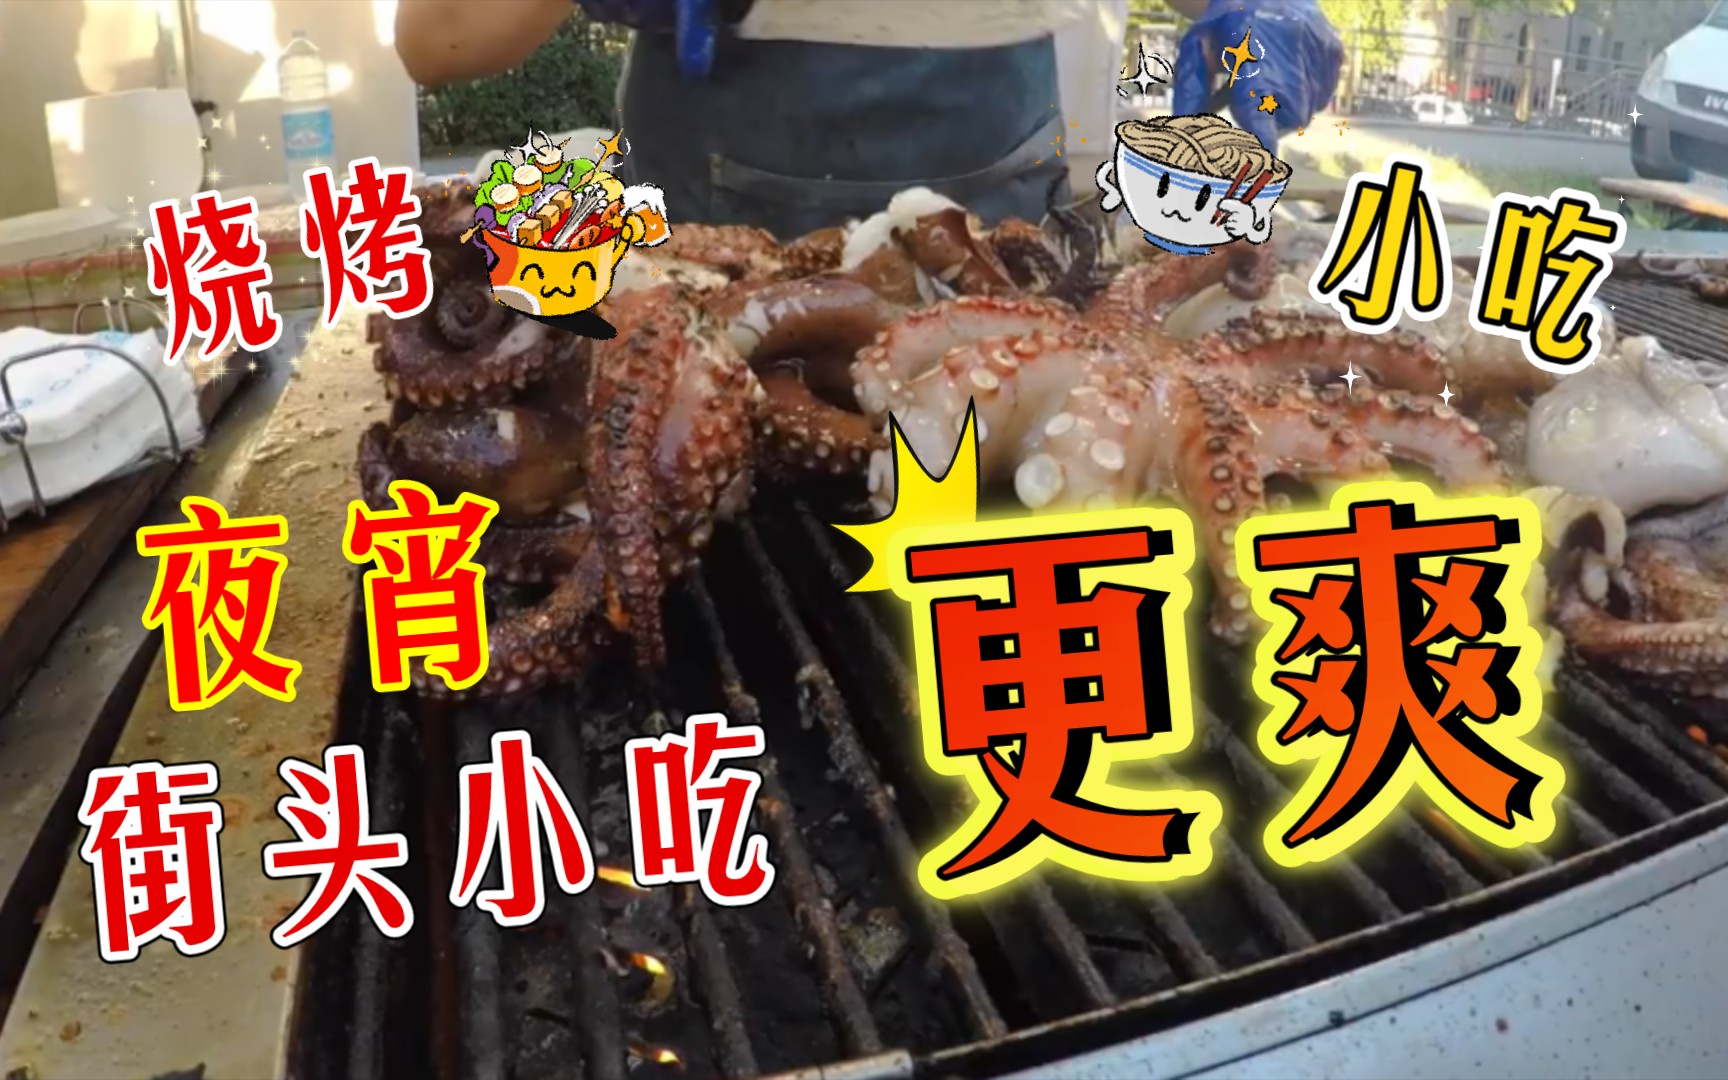 鲜活的章鱼韩国人一口一只，真是开眼界了，日本人见了也要摇头 - 哔哩哔哩